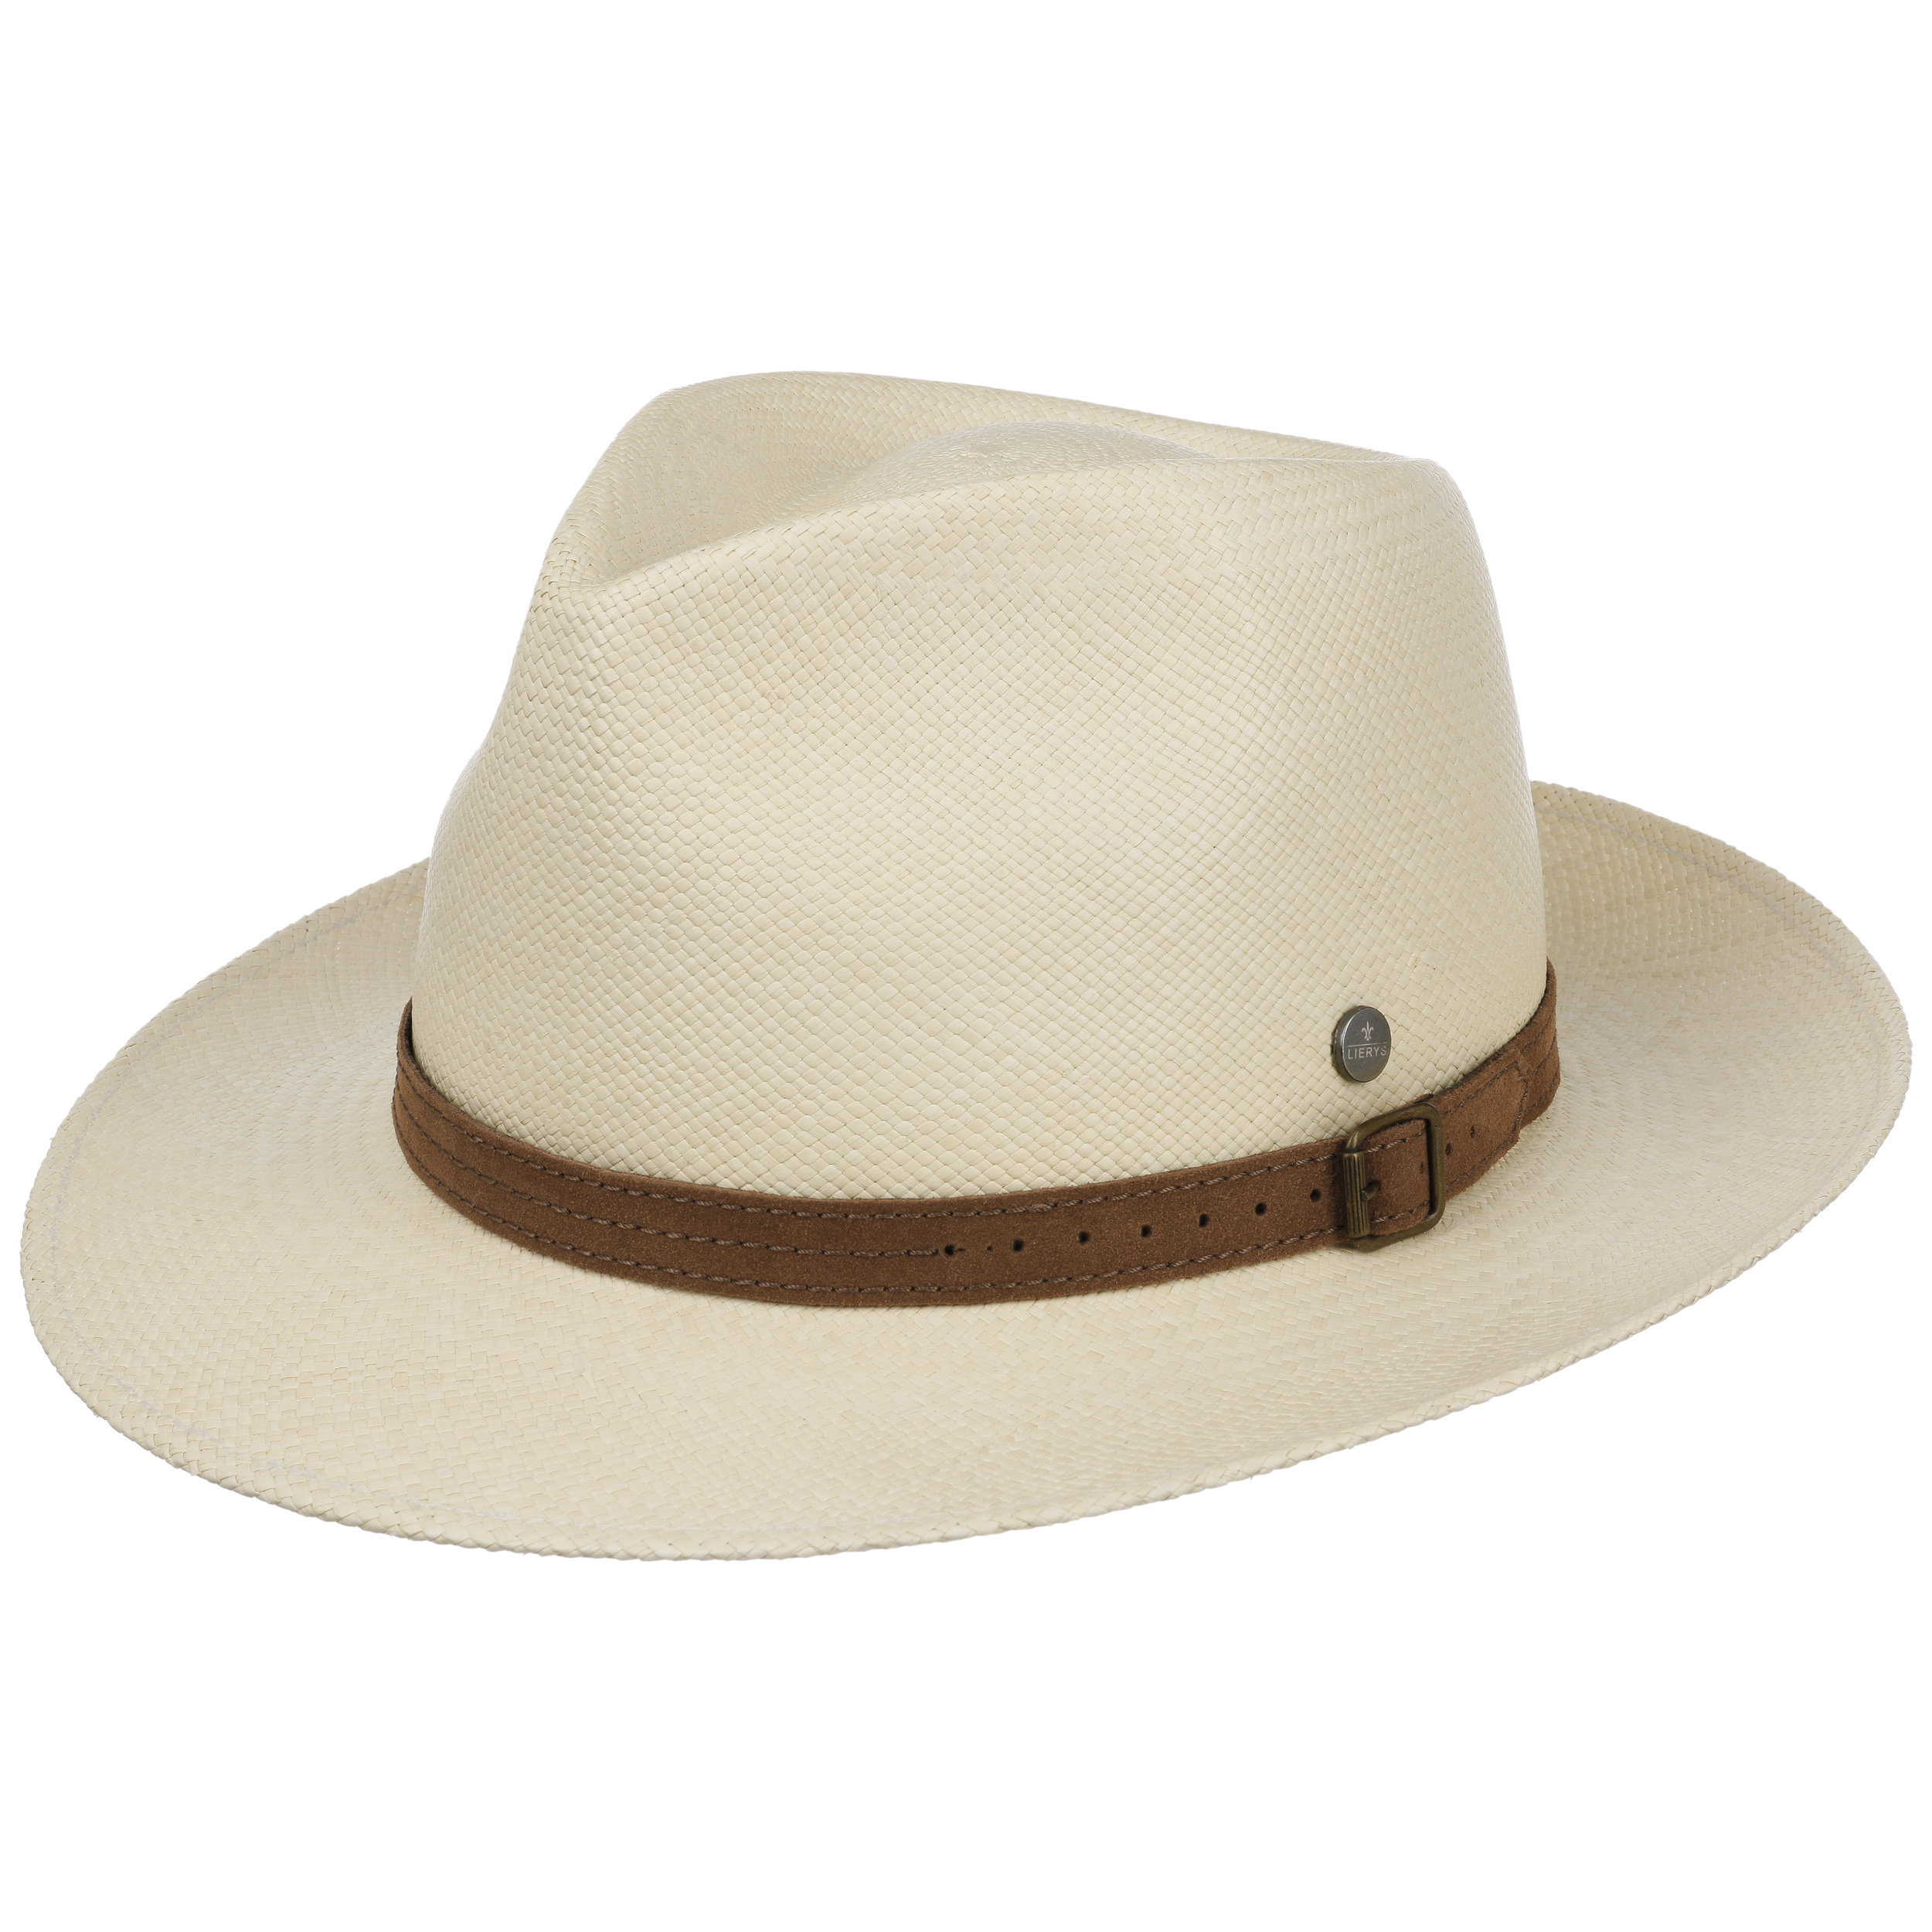 Faletony Stroh Panama Cappello estivo Fedora cappello da sole in paglia con nastro pieghevole Jazz cappello per uomo e donna Beige/Kahki 